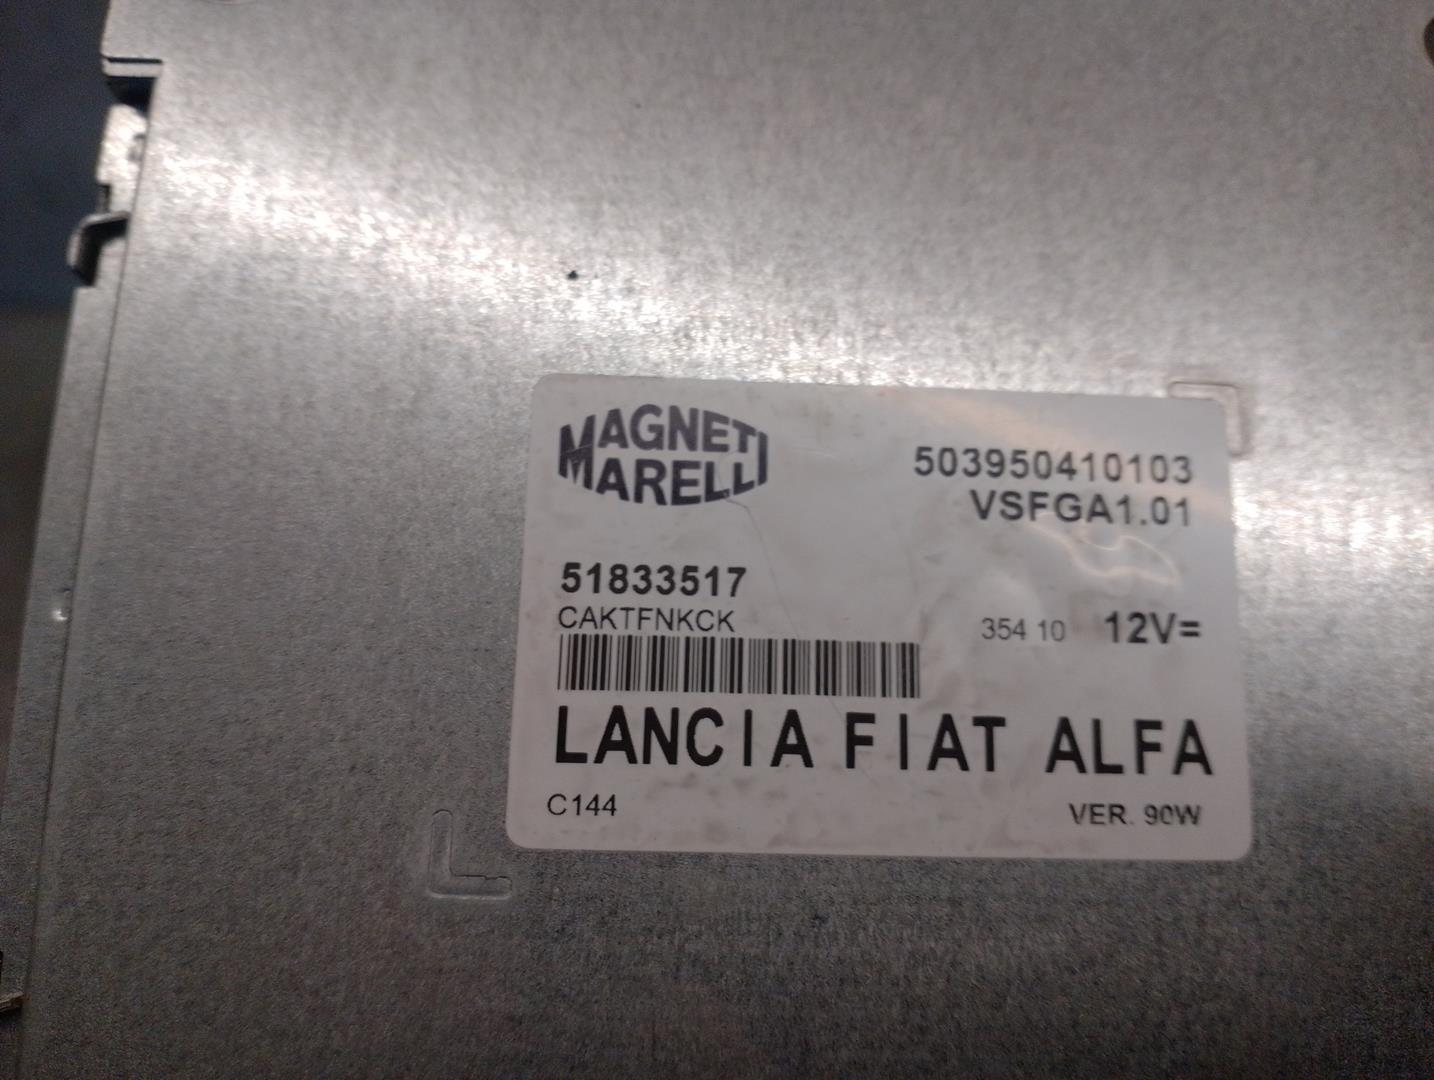 ALFA ROMEO Giulietta 940 (2010-2020) Comfort Control Unit 51833517, 503950410103, MAGNETIMARELLI 24213277